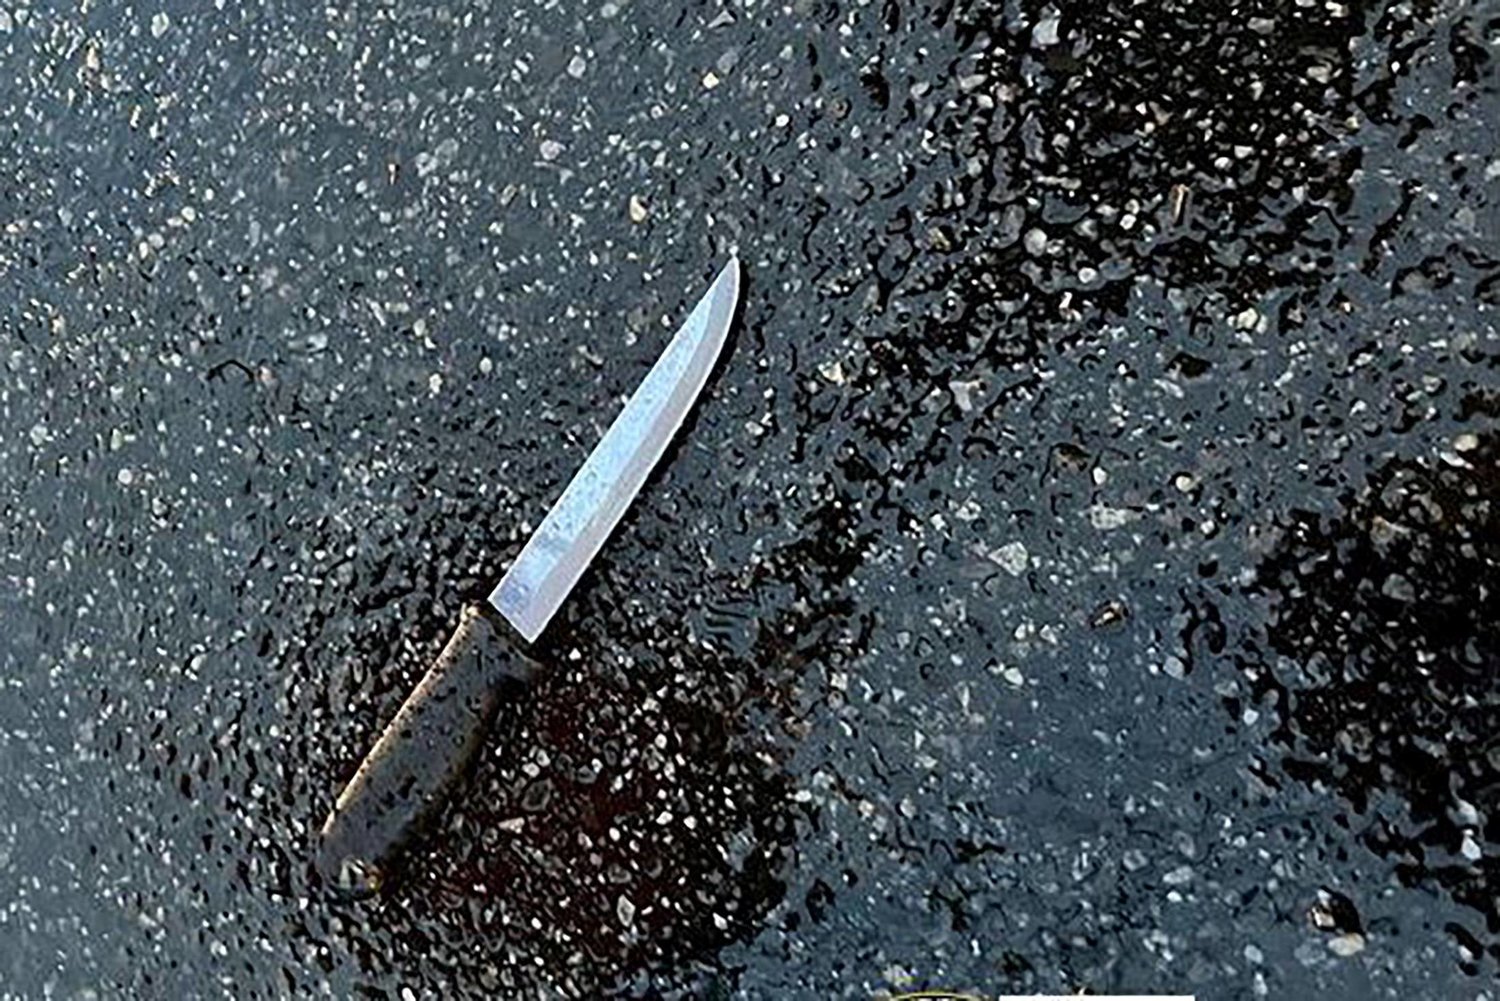 السكينة التي استخدمت لارتكاب الجريمة في مدينة نيويورك اليوم (رويترز)